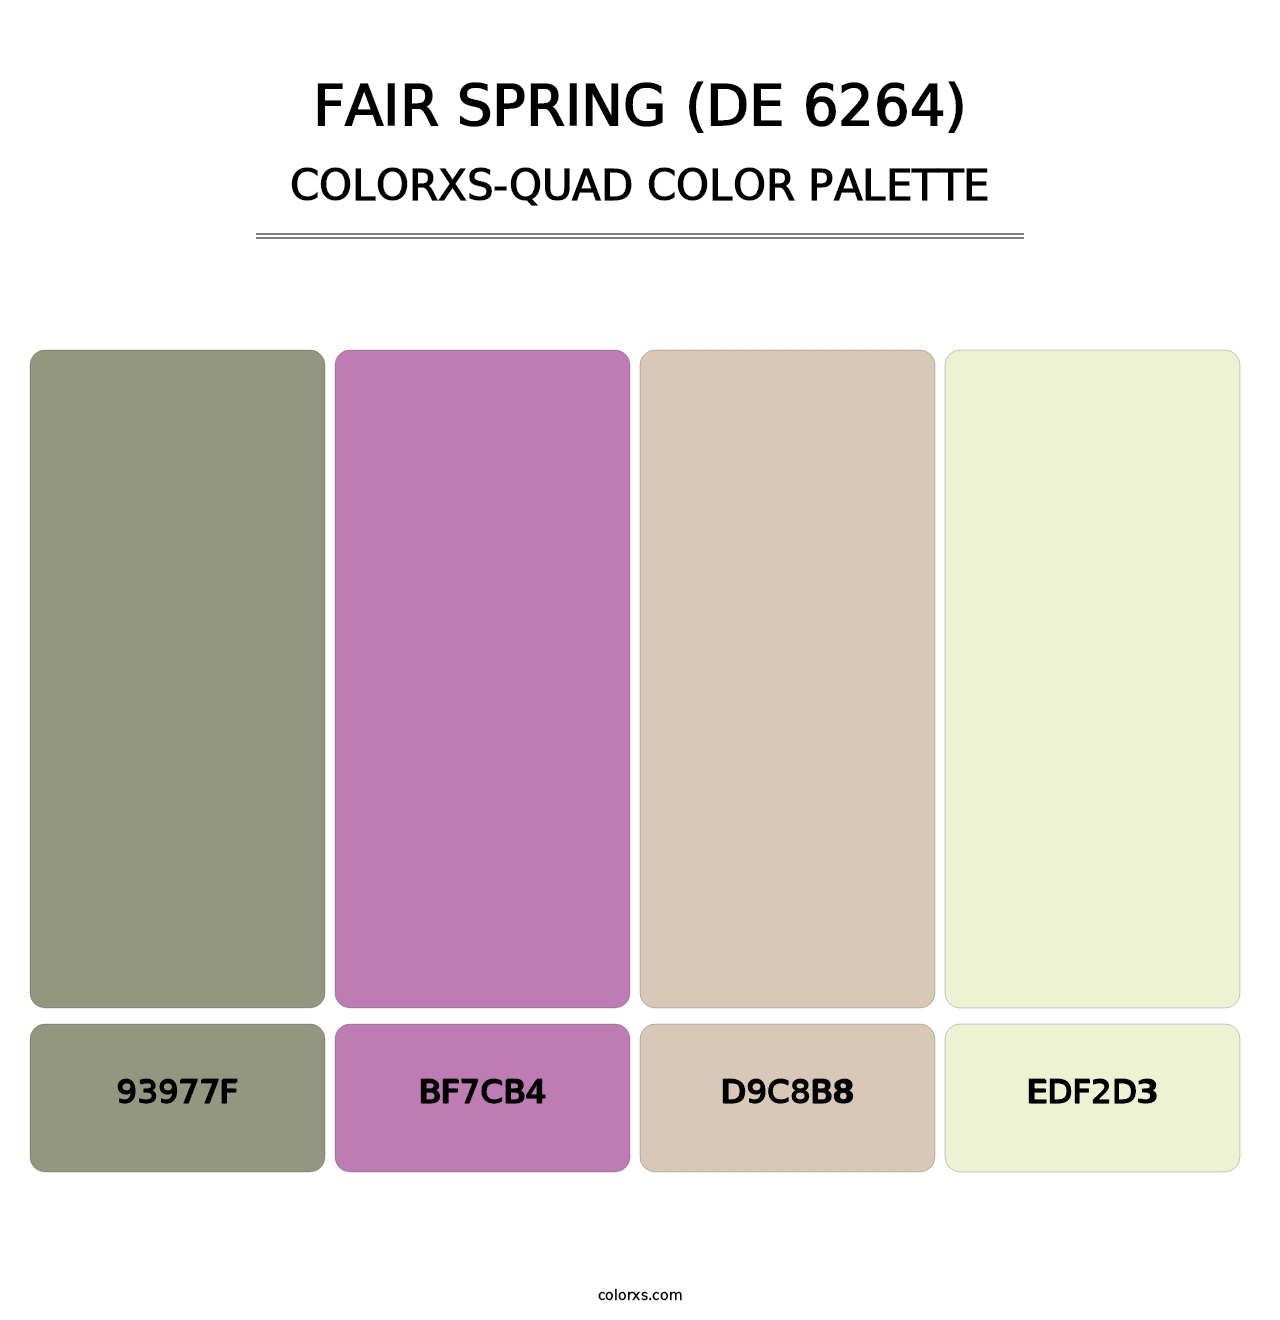 Fair Spring (DE 6264) - Colorxs Quad Palette